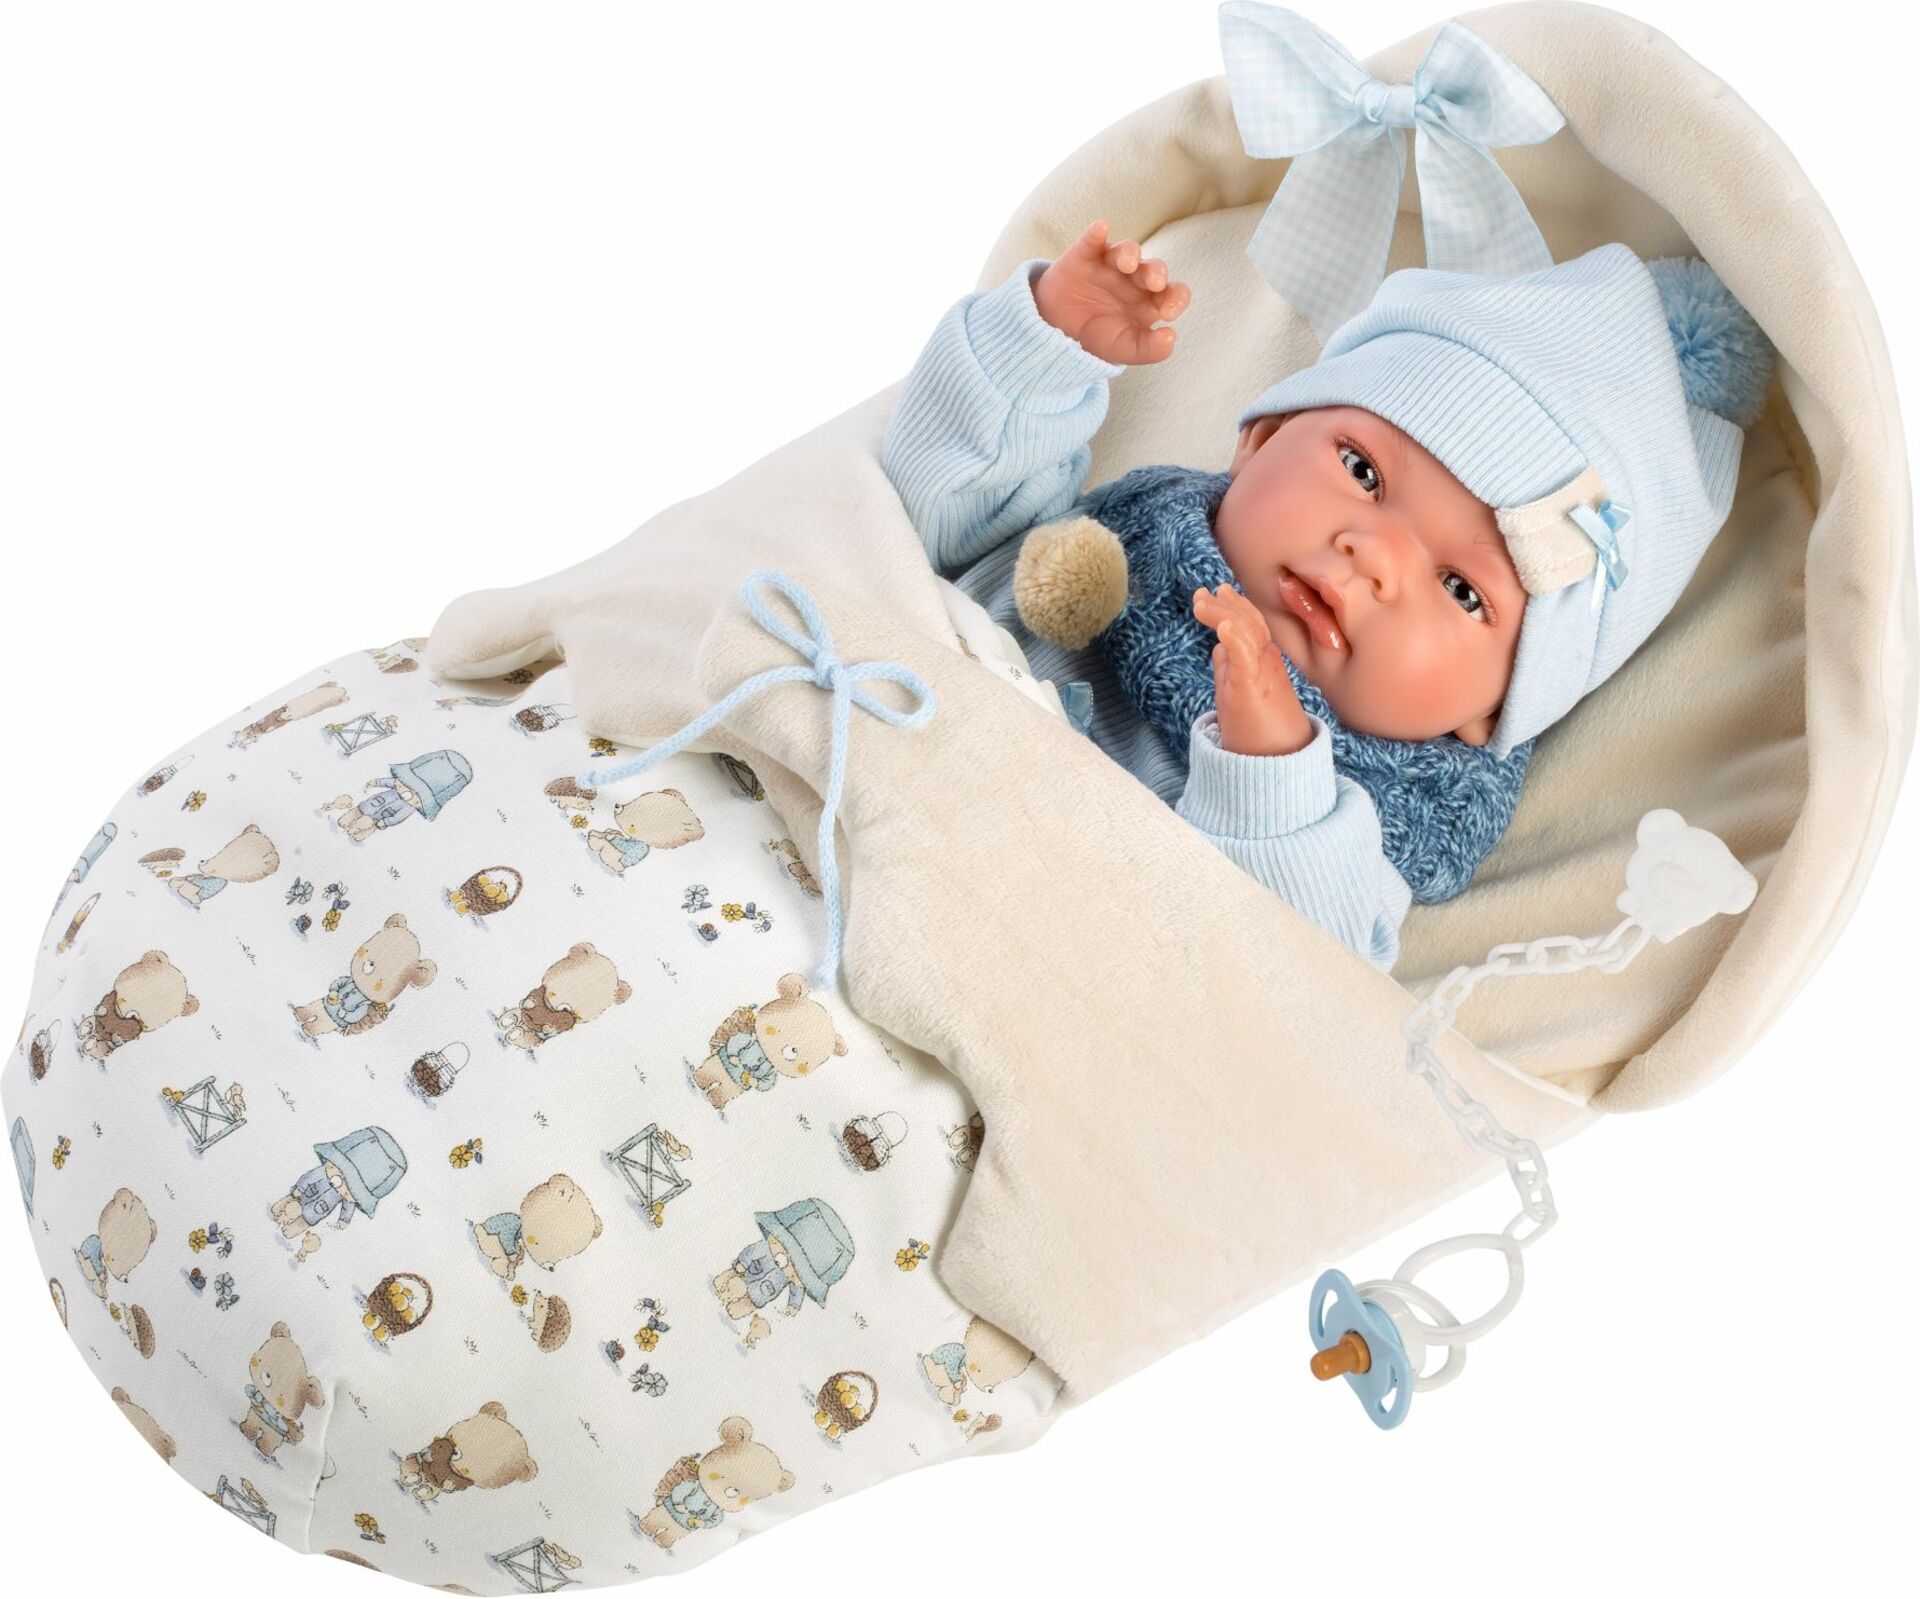 Llorens 73885 NEW BORN CHLAPEK - realistická panenka miminko s celovinylovým tělem - 40